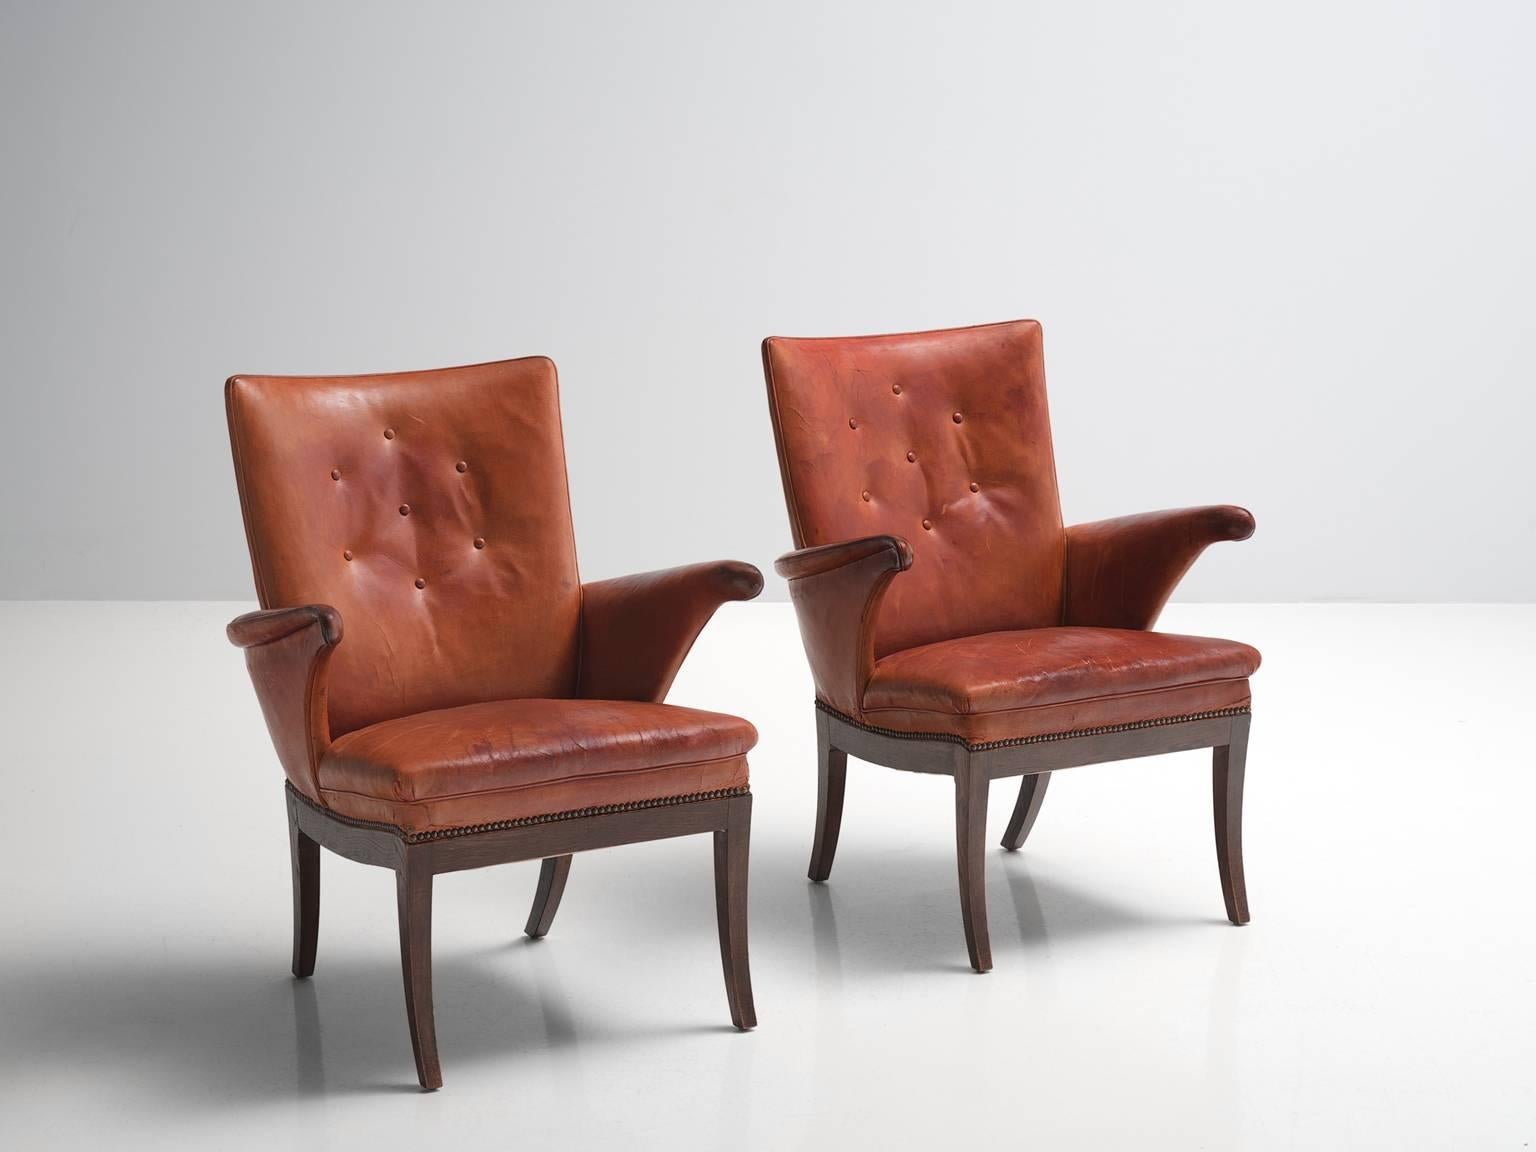 Scandinavian Modern Frits Henningsen Pair of Cognac Leather Chairs, circa 1930